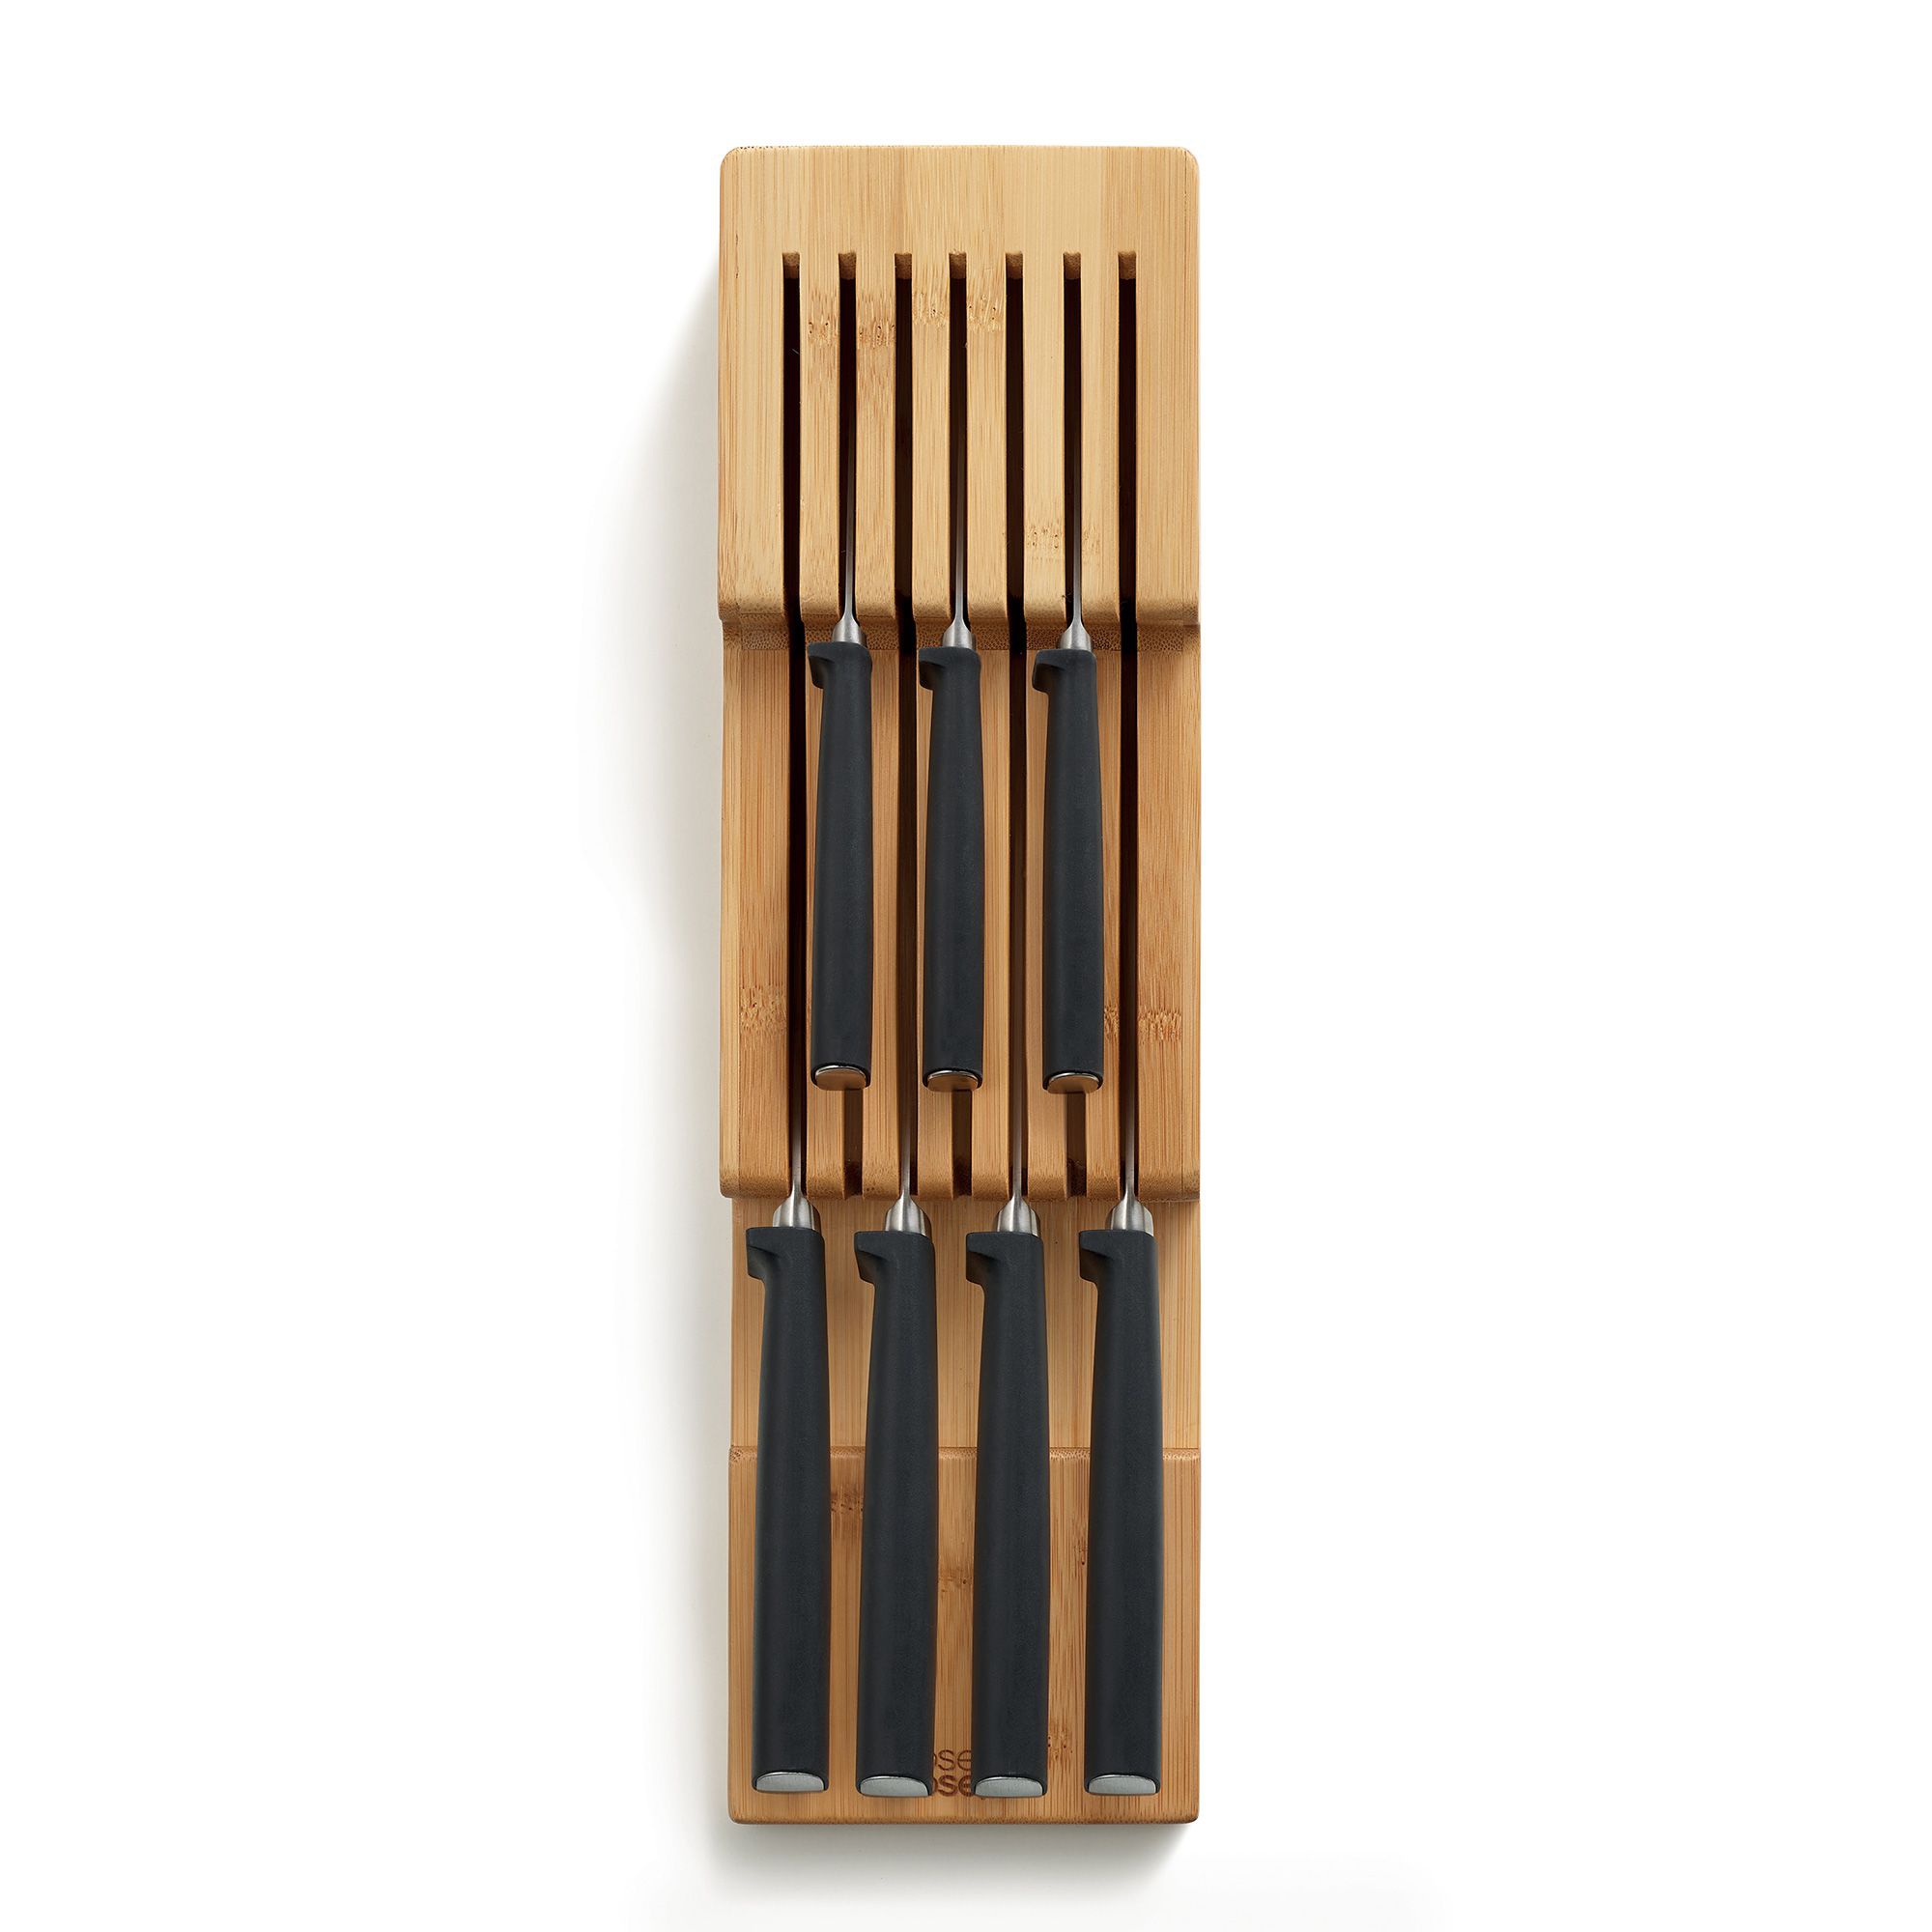 Joseph Joseph - DrawerStore™ Bamboo Compact Knife Organiser - Bamboo